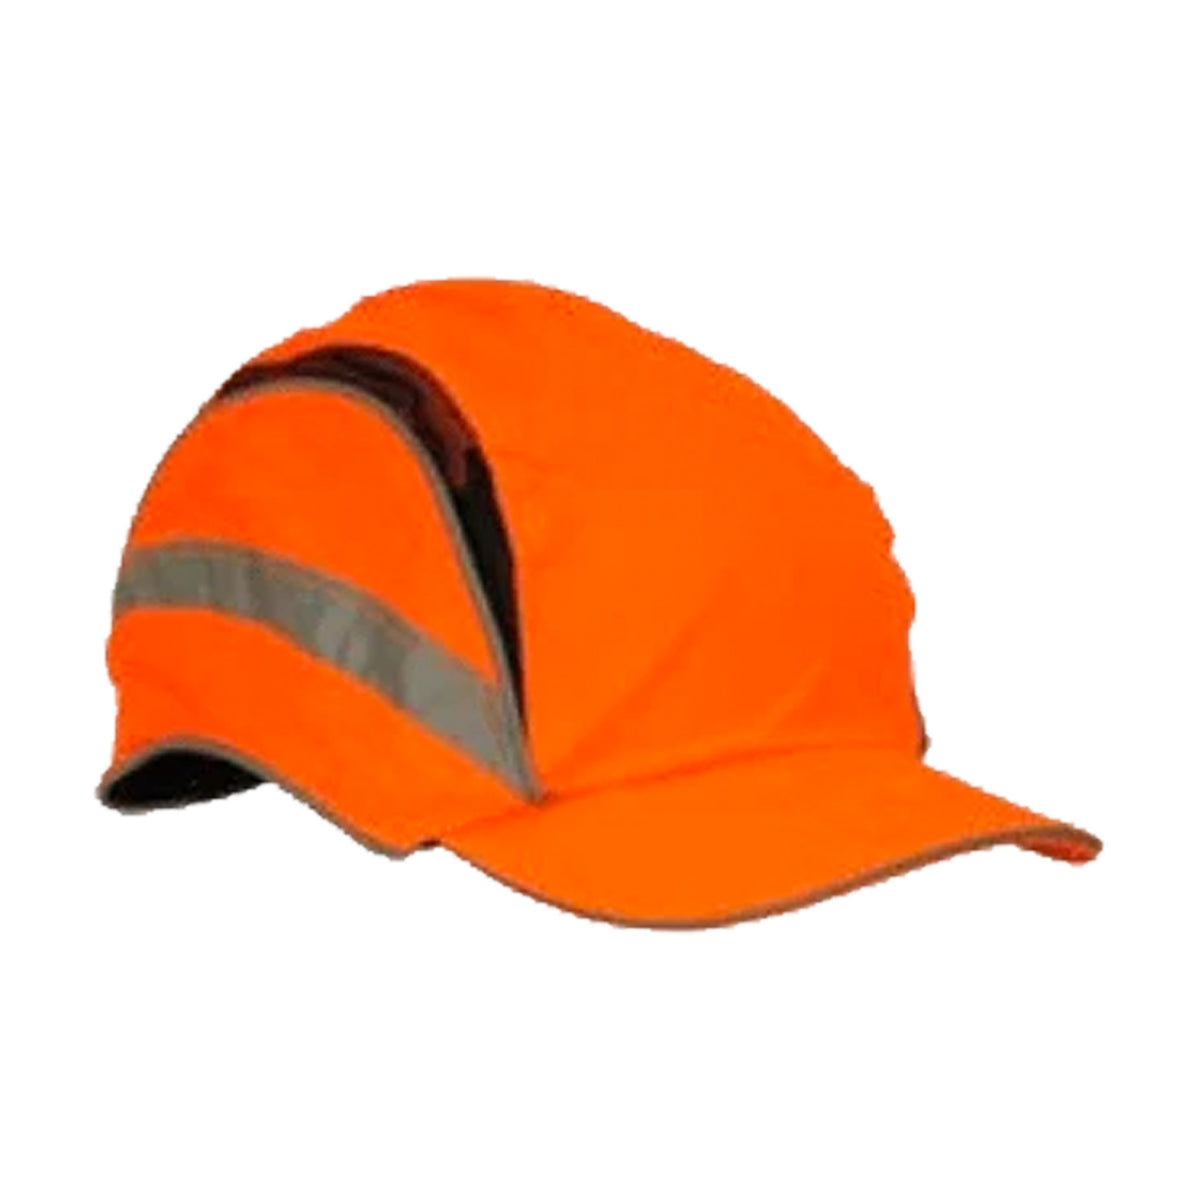 classic reduced peak base bump cap 3 in hi vis orange